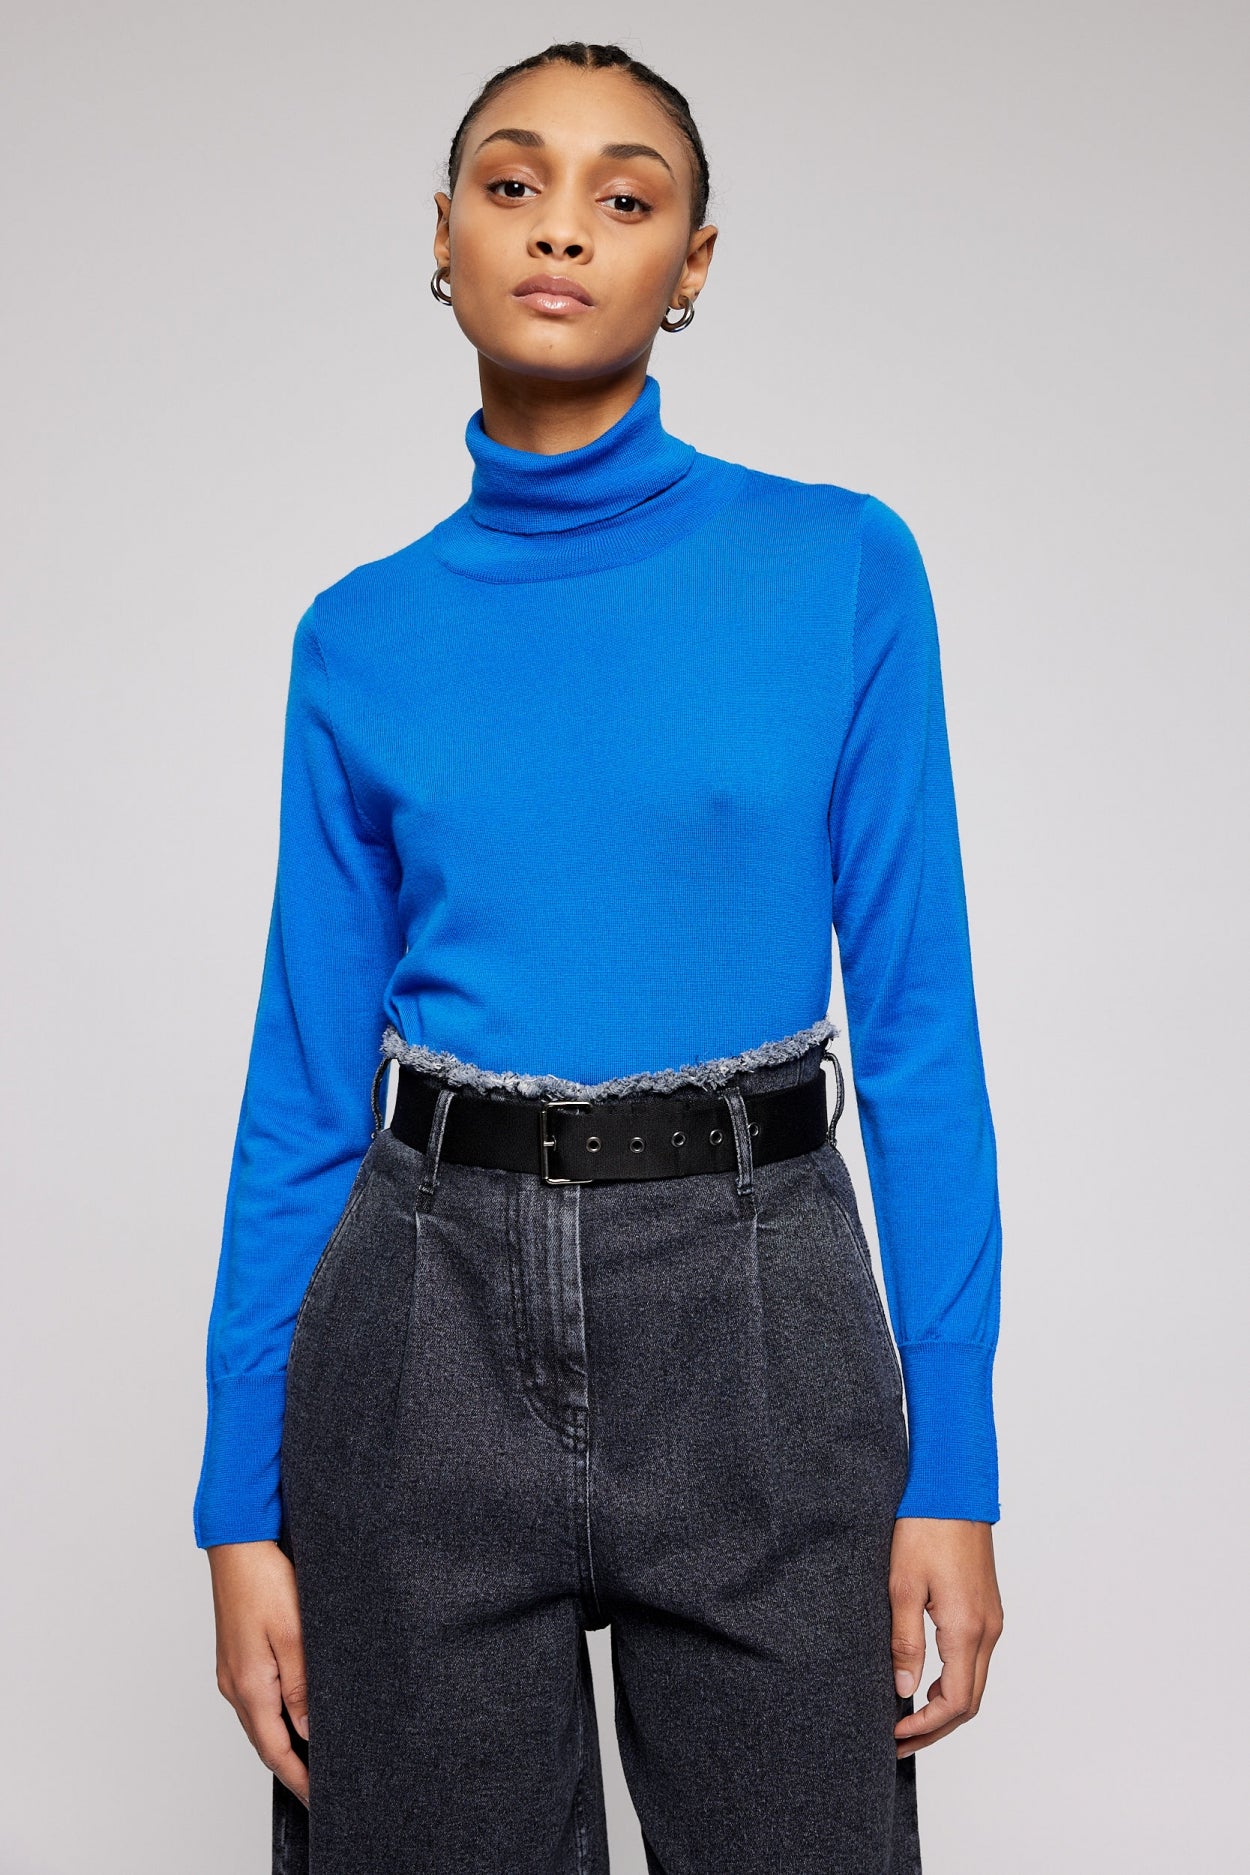 KOSI pullover | ROYAL BLUE